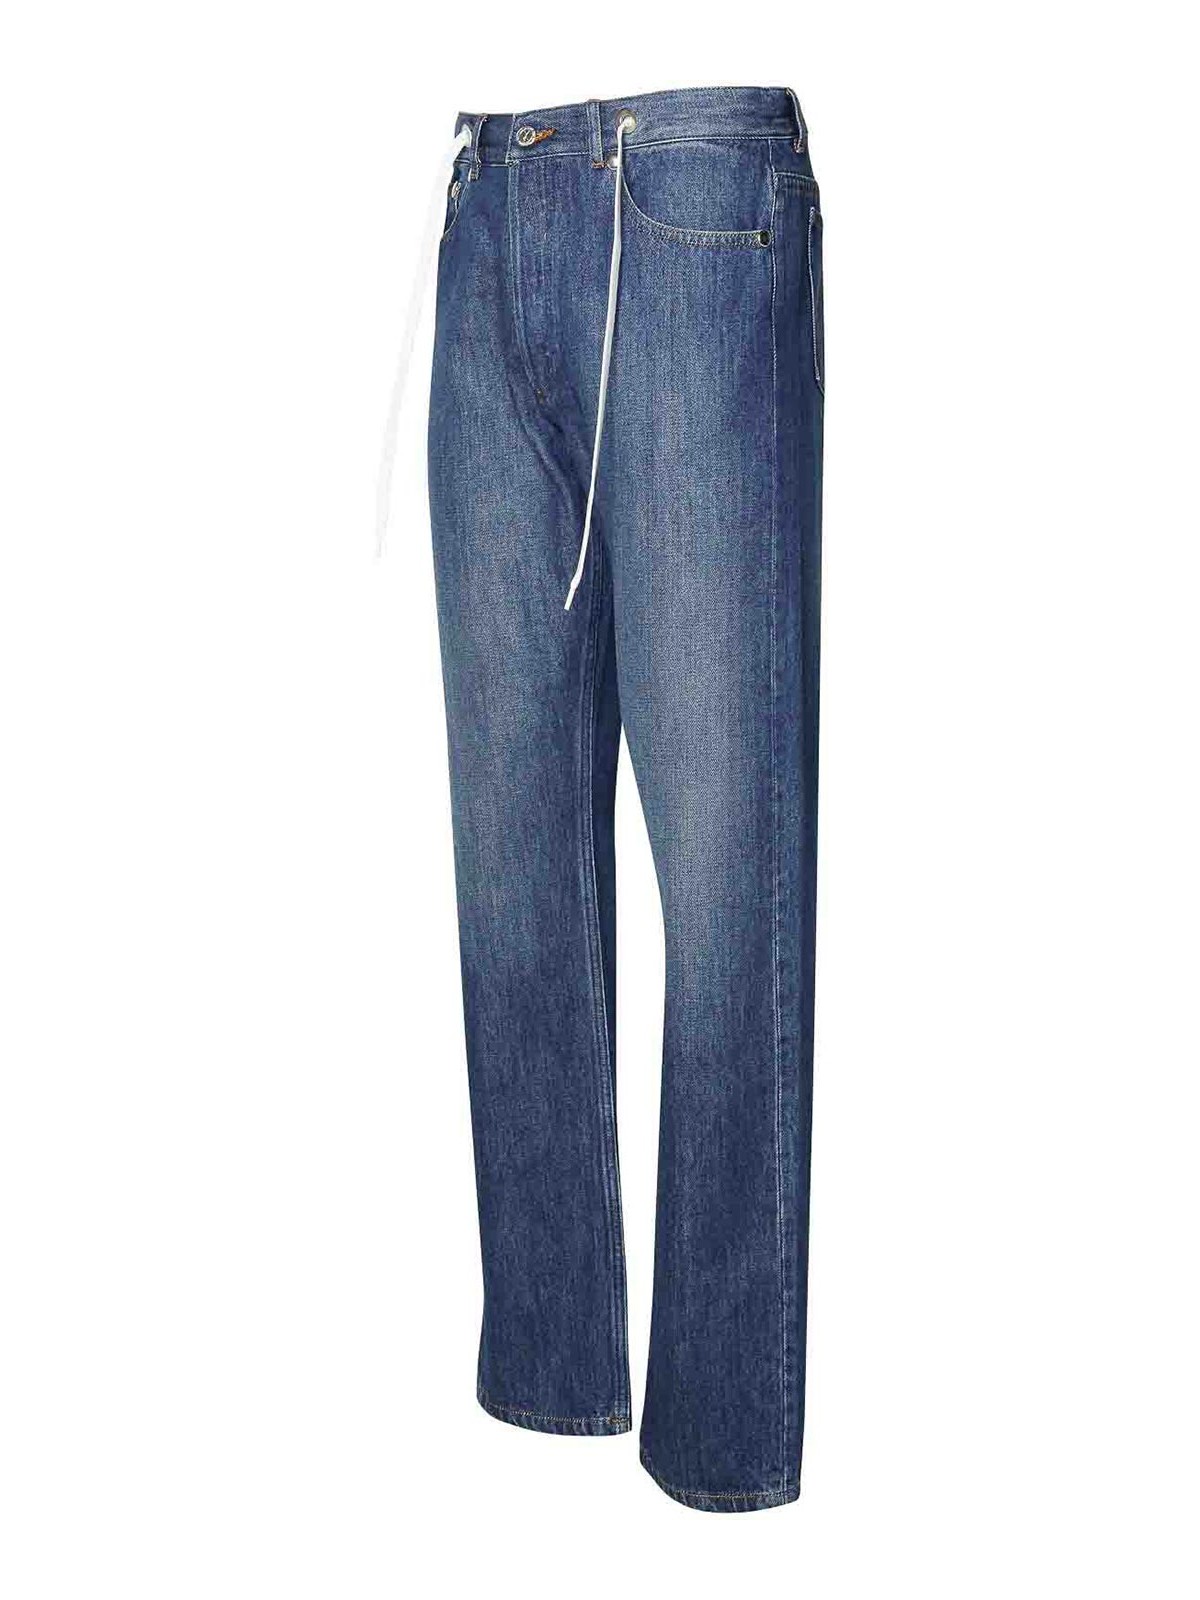 Shop Apc Sureau Blue Cotton Jeans